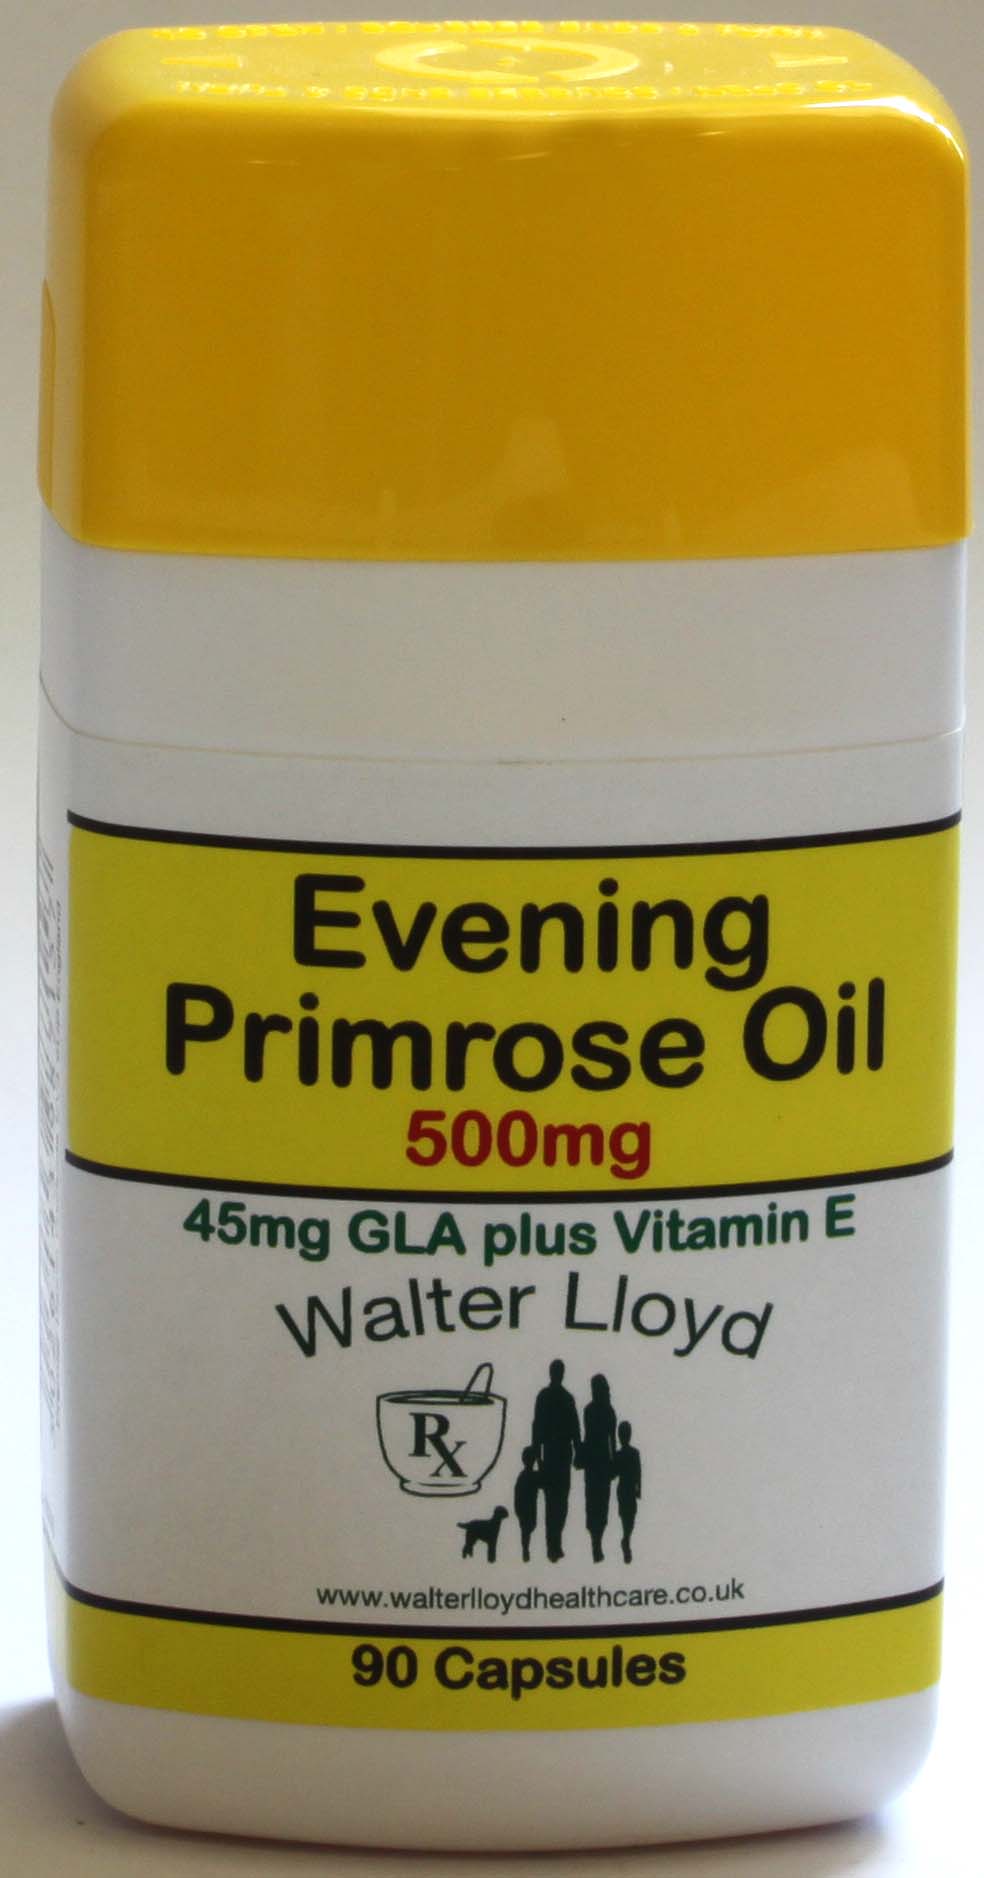 Evening Primrose Oil 500mg - 90 Capsules